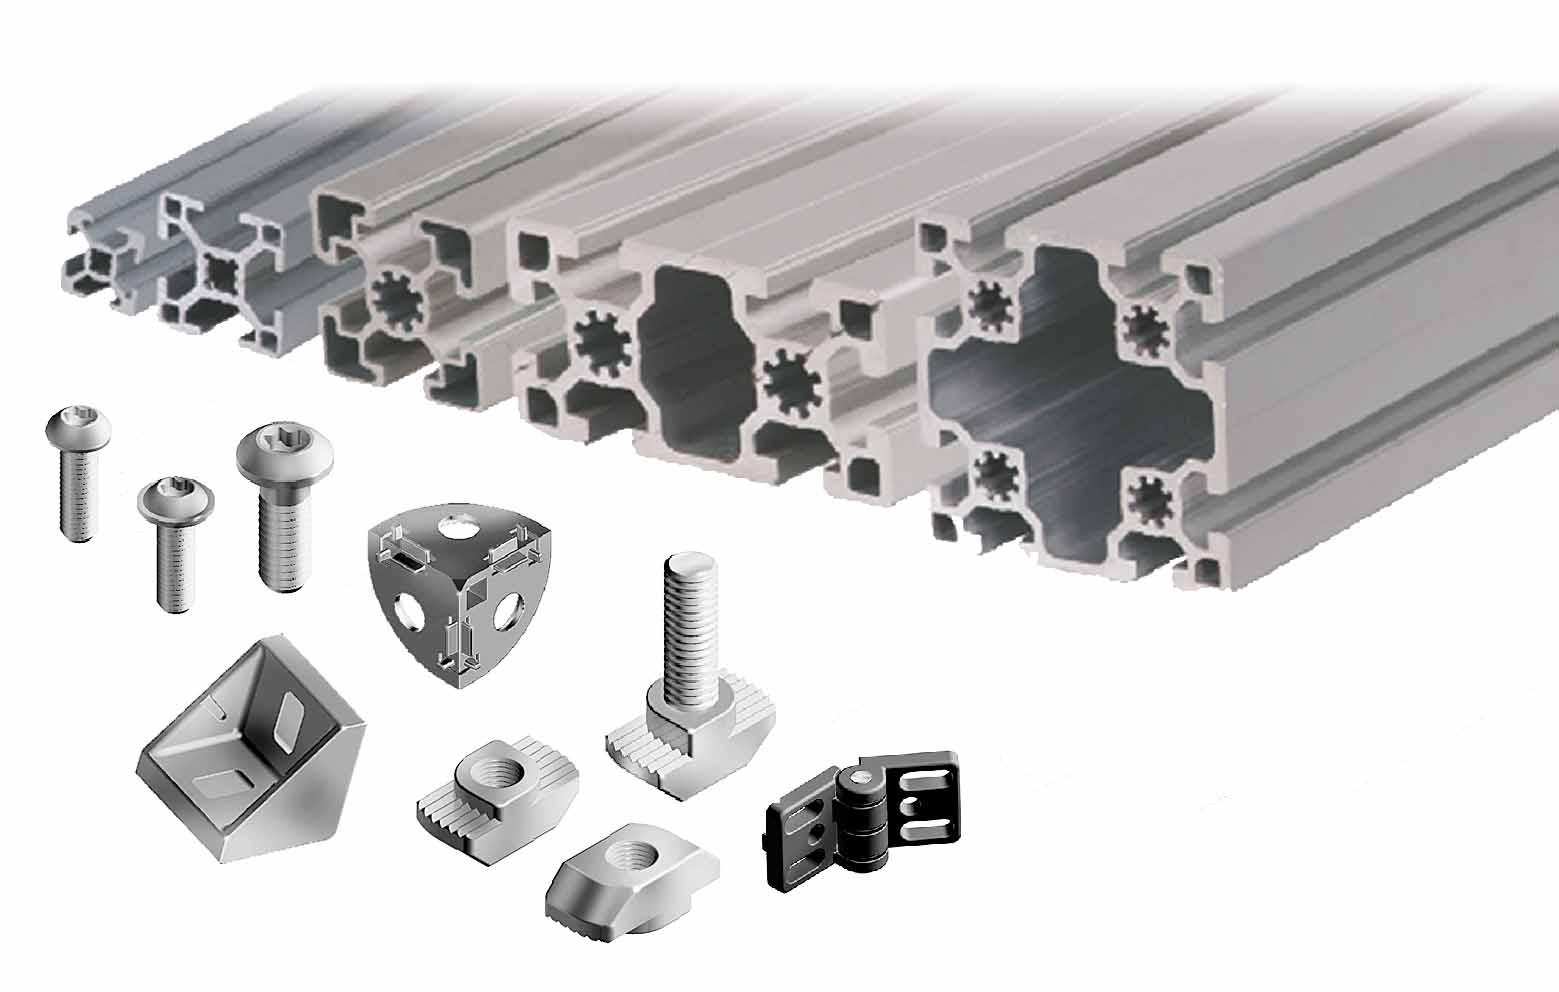 Perbezaan, kelebihan dan keburukan antara profil aluminium tersemperit dan produk aloi aluminium die-cast
        